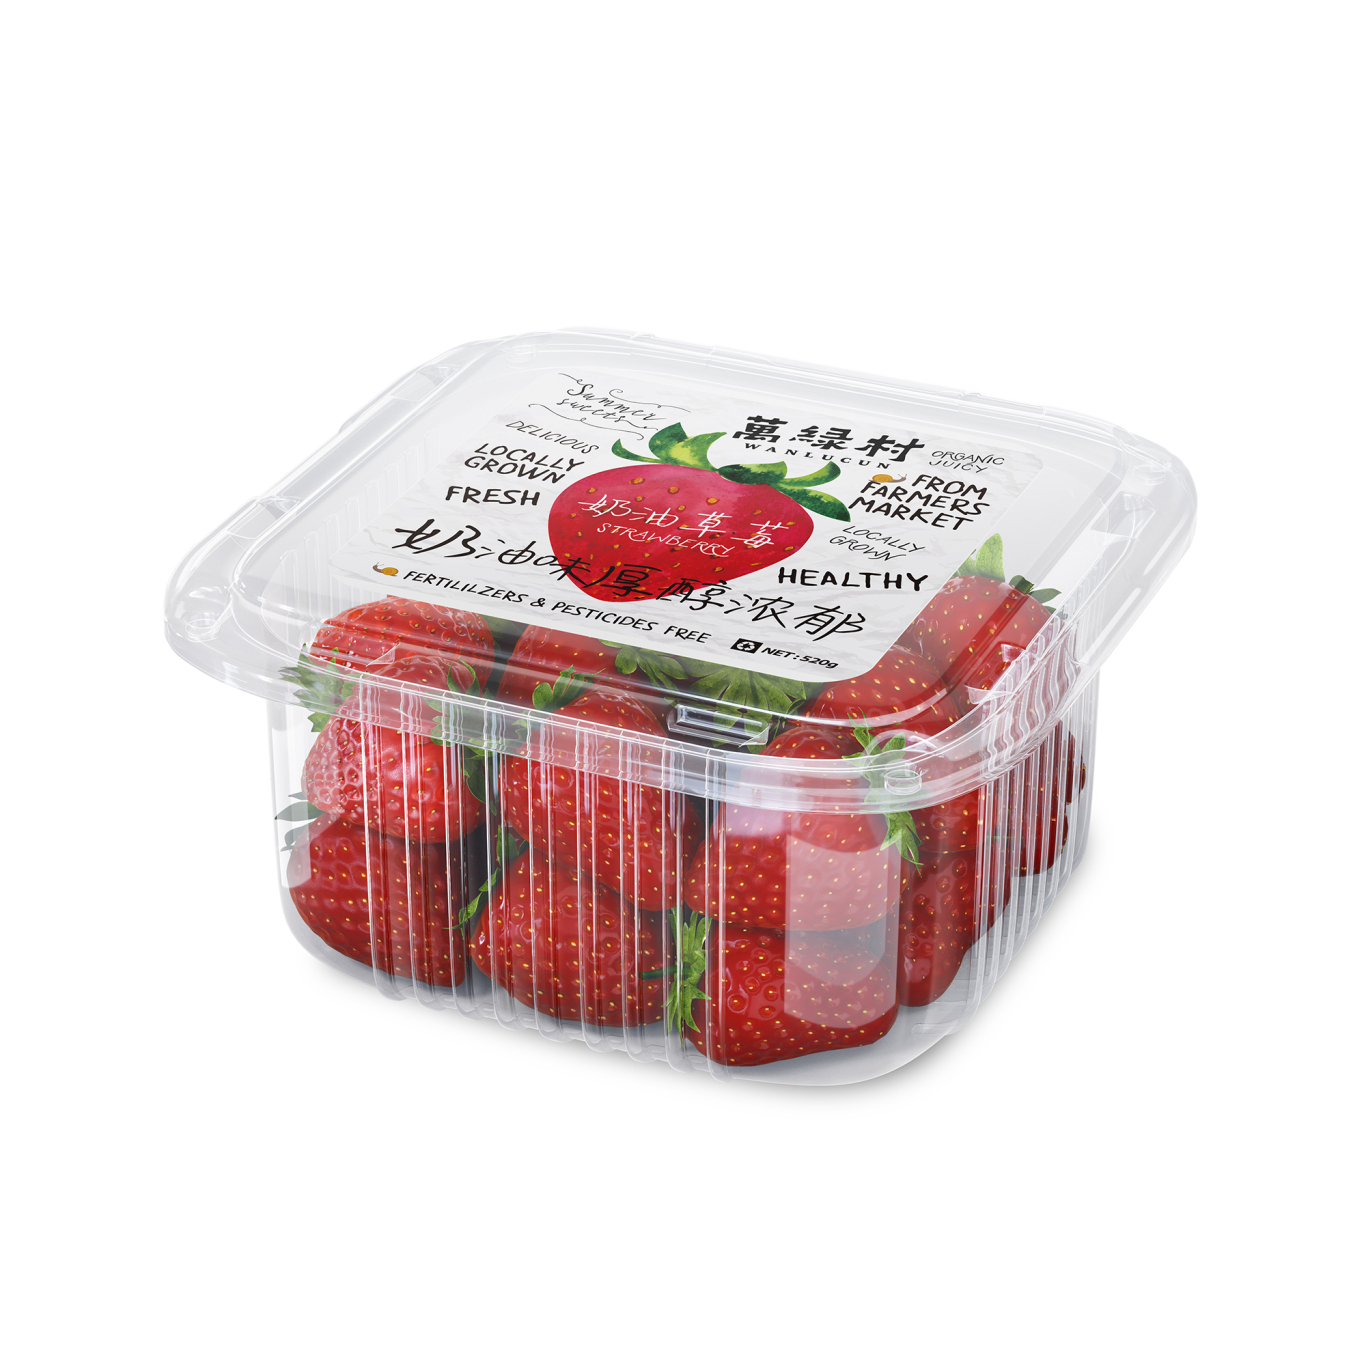 万绿村草莓番茄农产品包装设计图11